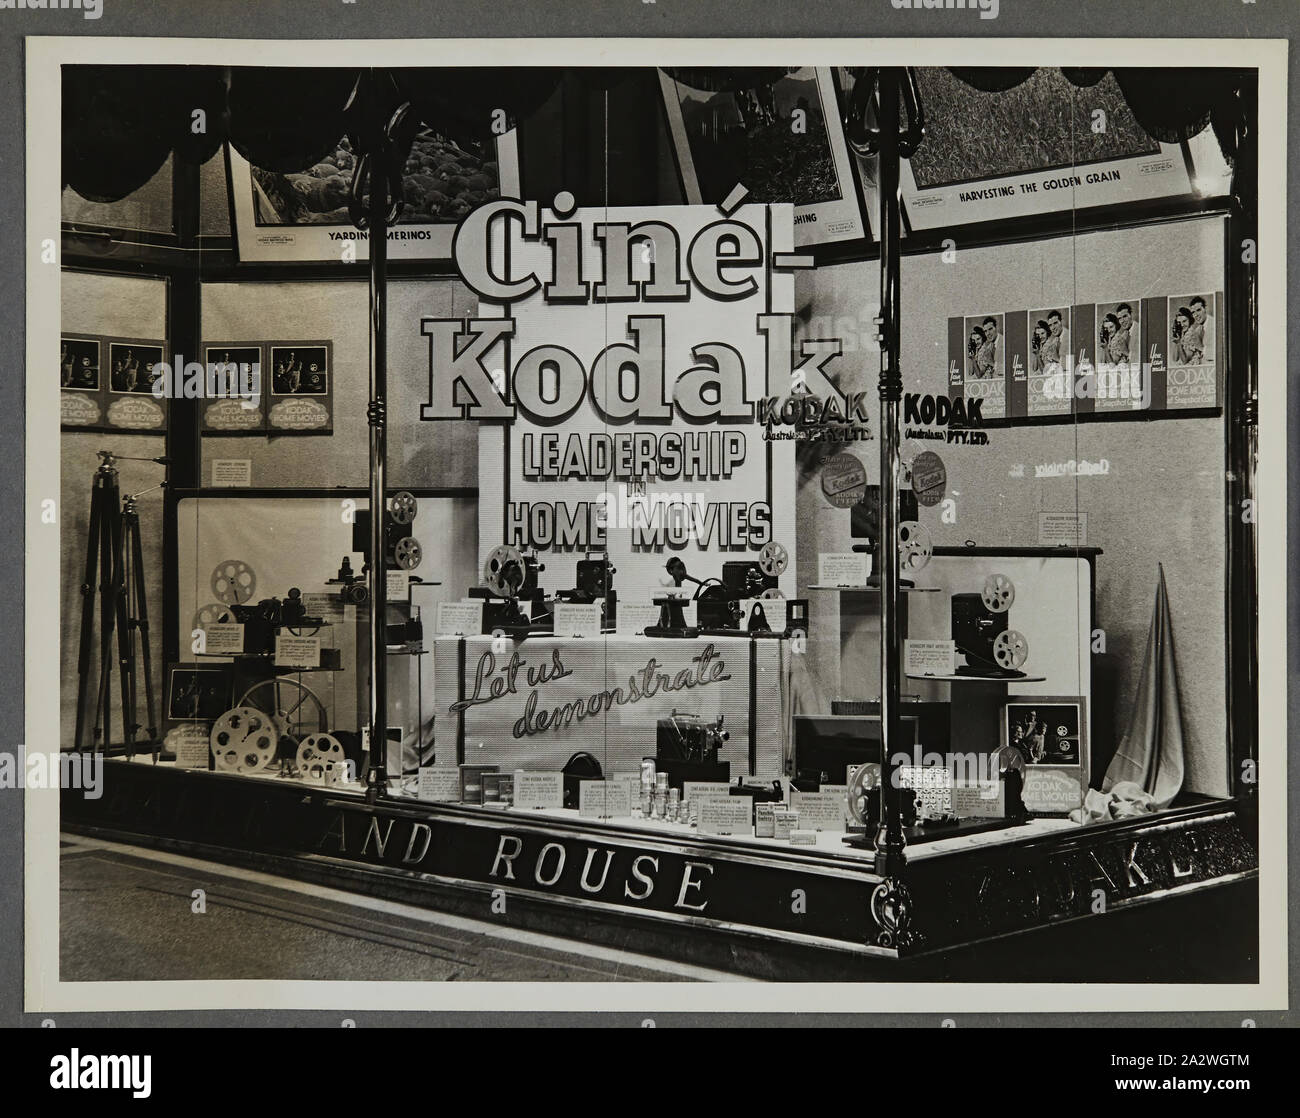 Photographie - Kodak, des passants, l'affichage 'Cine-Kodak, Leadership dans les films à la maison', vers 1934-1936, des passants afficher 'Cine-Kodak, Leadership dans les films à la maison" montrant des caméras, des photographies, des accessoires et de l'équipement photographique. L'une des cinquante-six photographies dans un album illustrant Australasia Pty Ltd Kodak shop/fenêtre affiche depuis le milieu des années 1930. En général Windows produits en vedette promotions pour film ou des appareils photo, ainsi que des expositions de photos pour attirer les foules au magasin. Expositions Banque D'Images